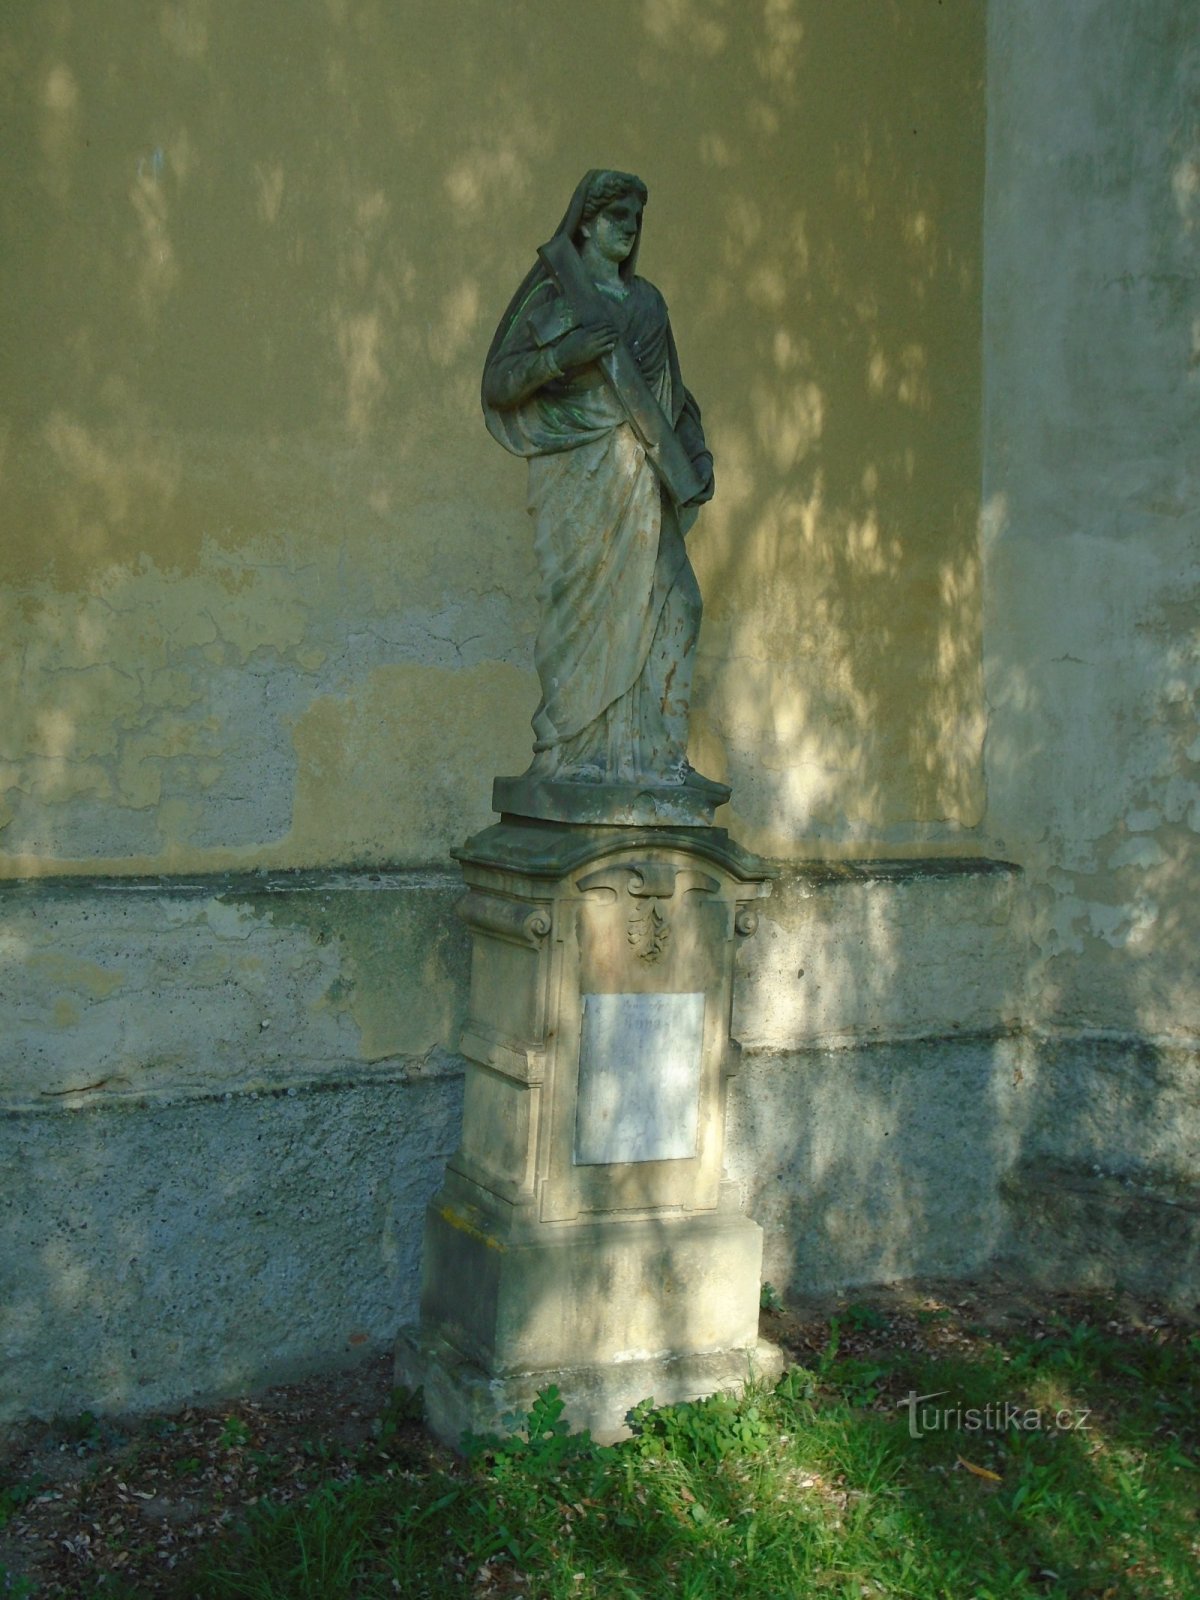 聖母マリア像 (Kratonohy)